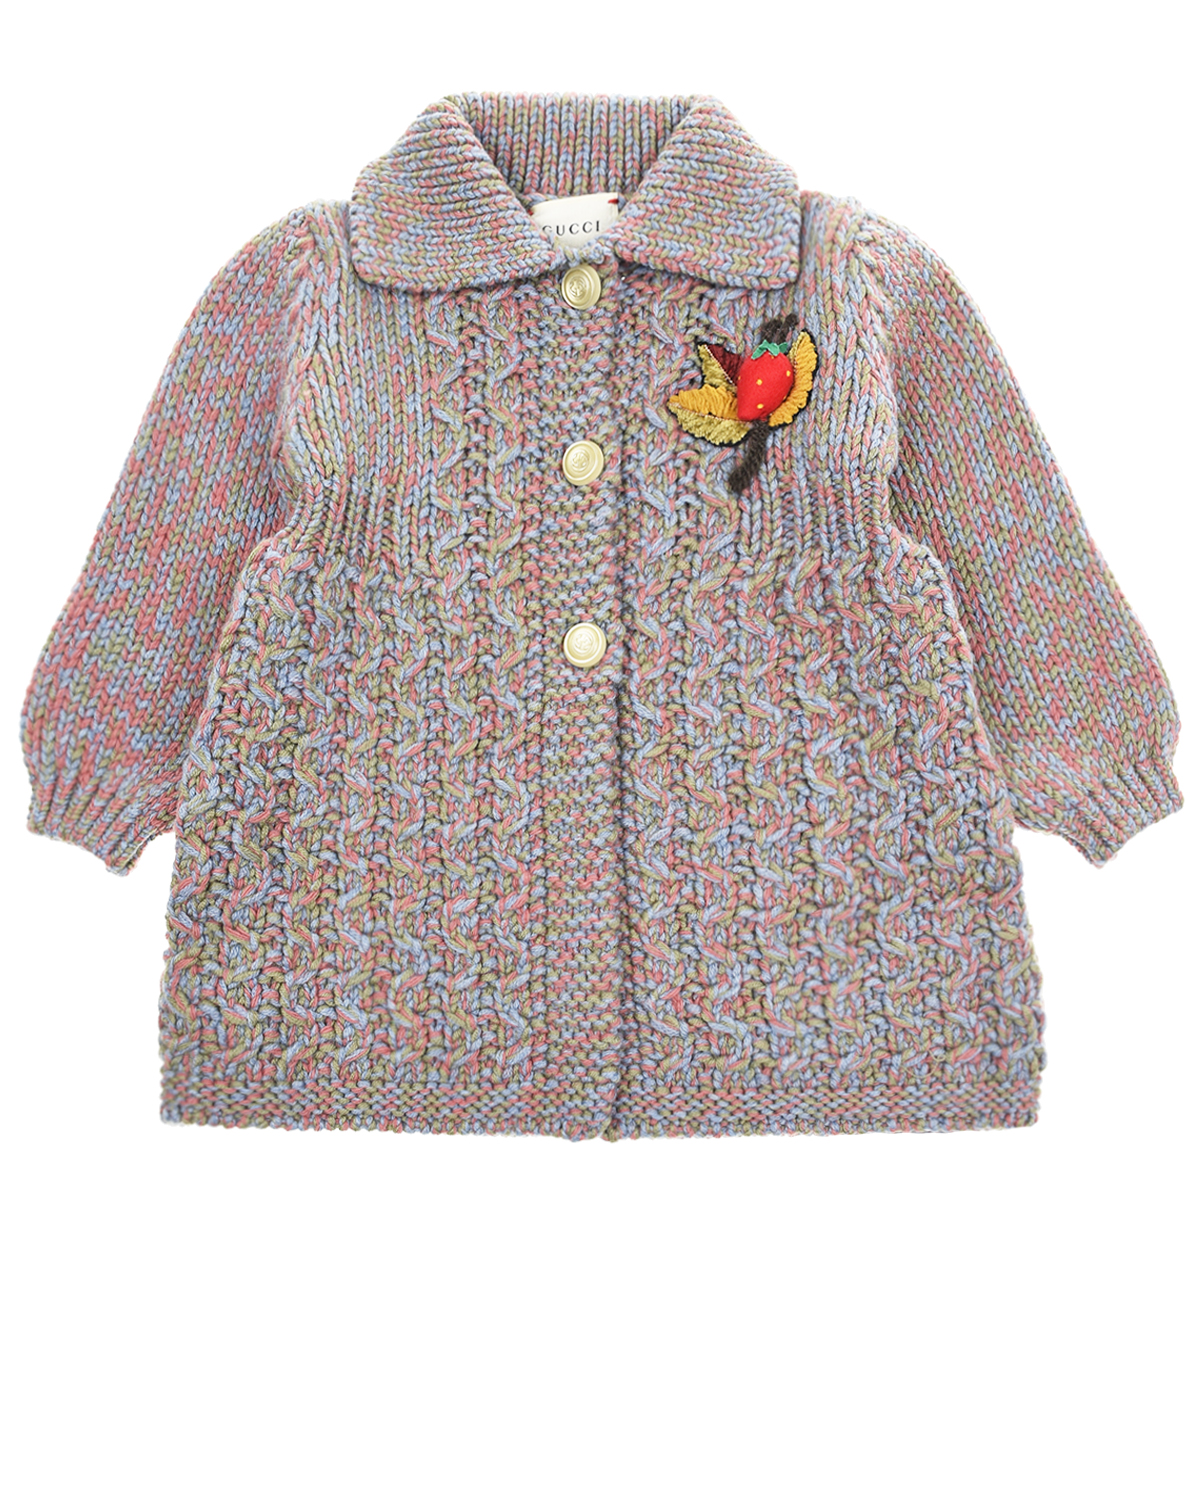 Вязаное пальто на пуговицах GUCCI детское, размер 74, цвет мультиколор